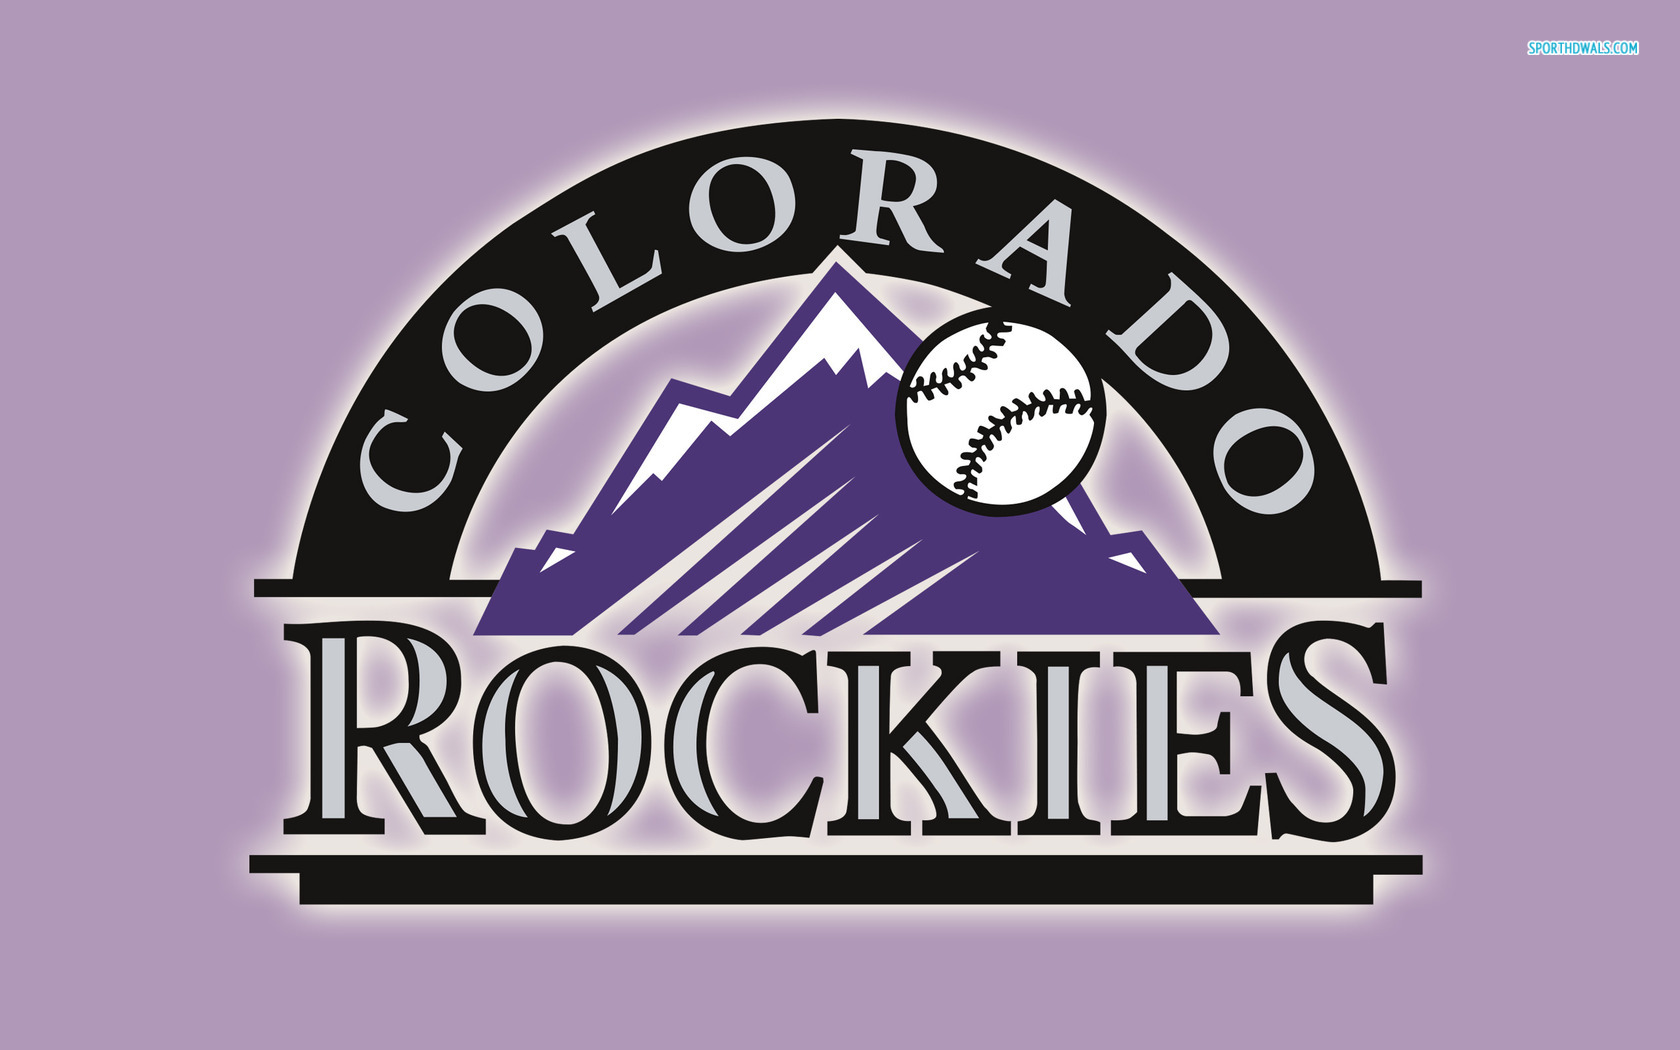 Colorado Rockies Logo Wallpaper For Desktop